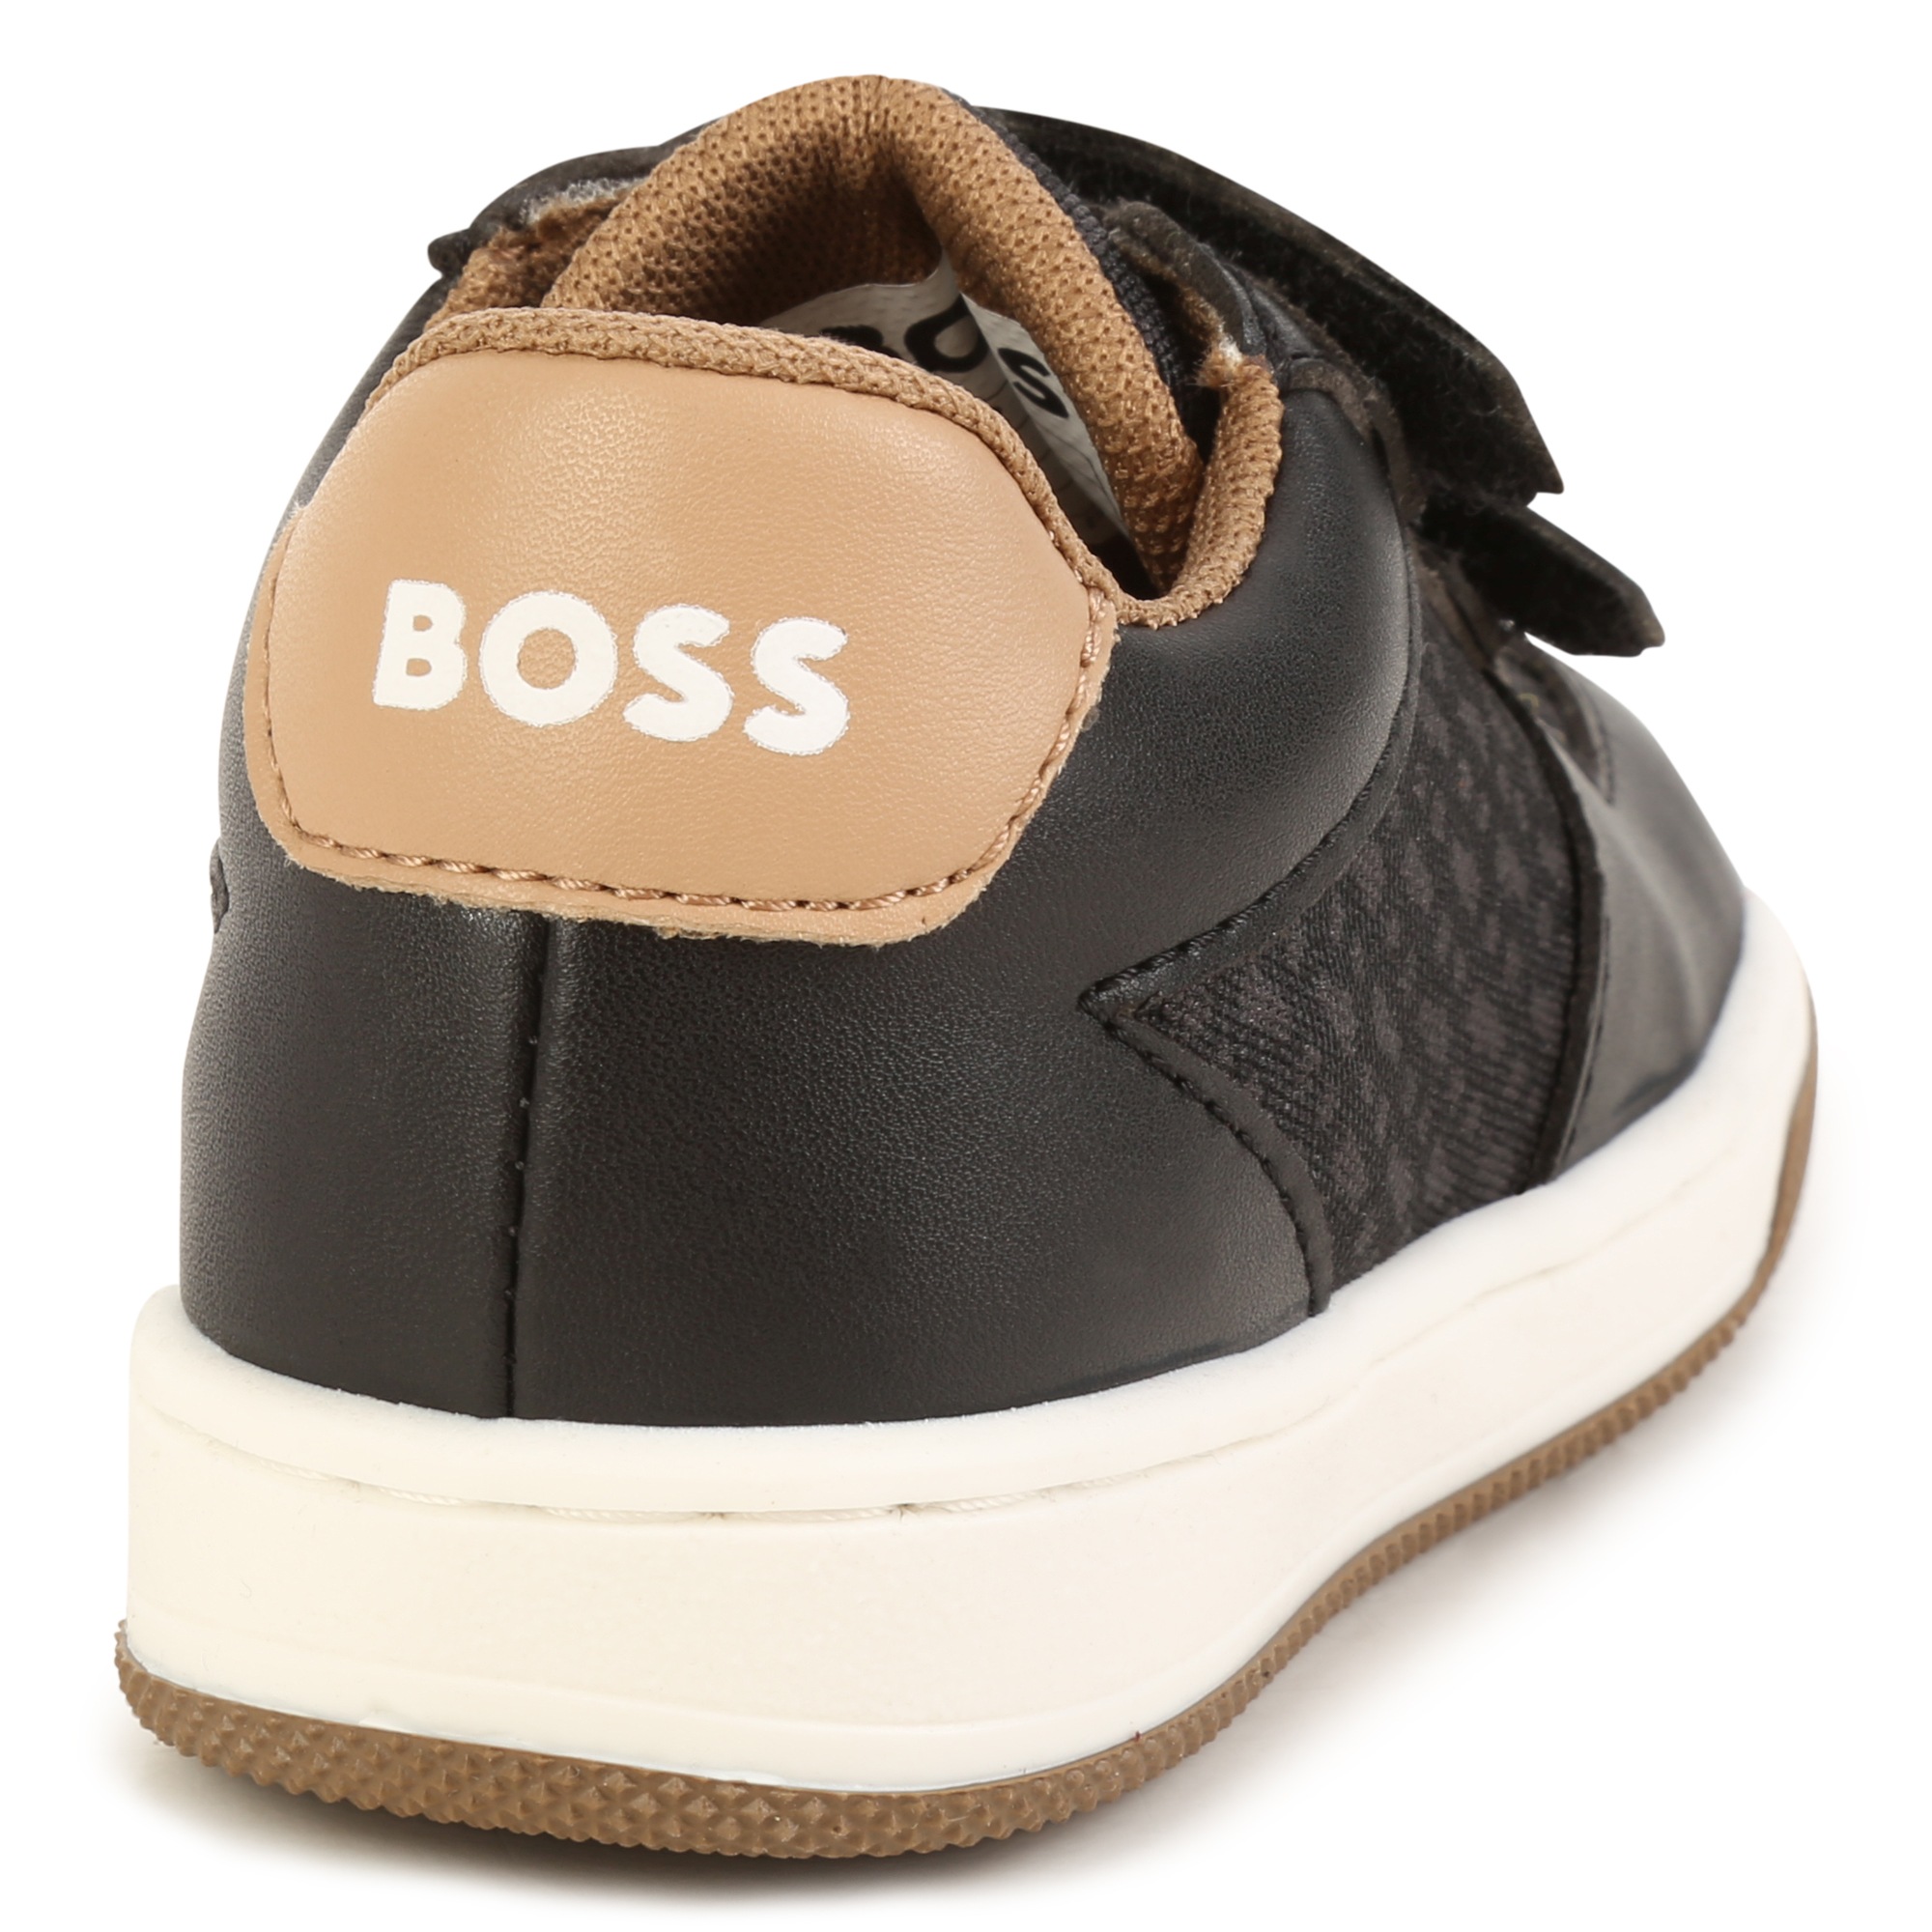 Klett-sneakers mit logo BOSS Für JUNGE